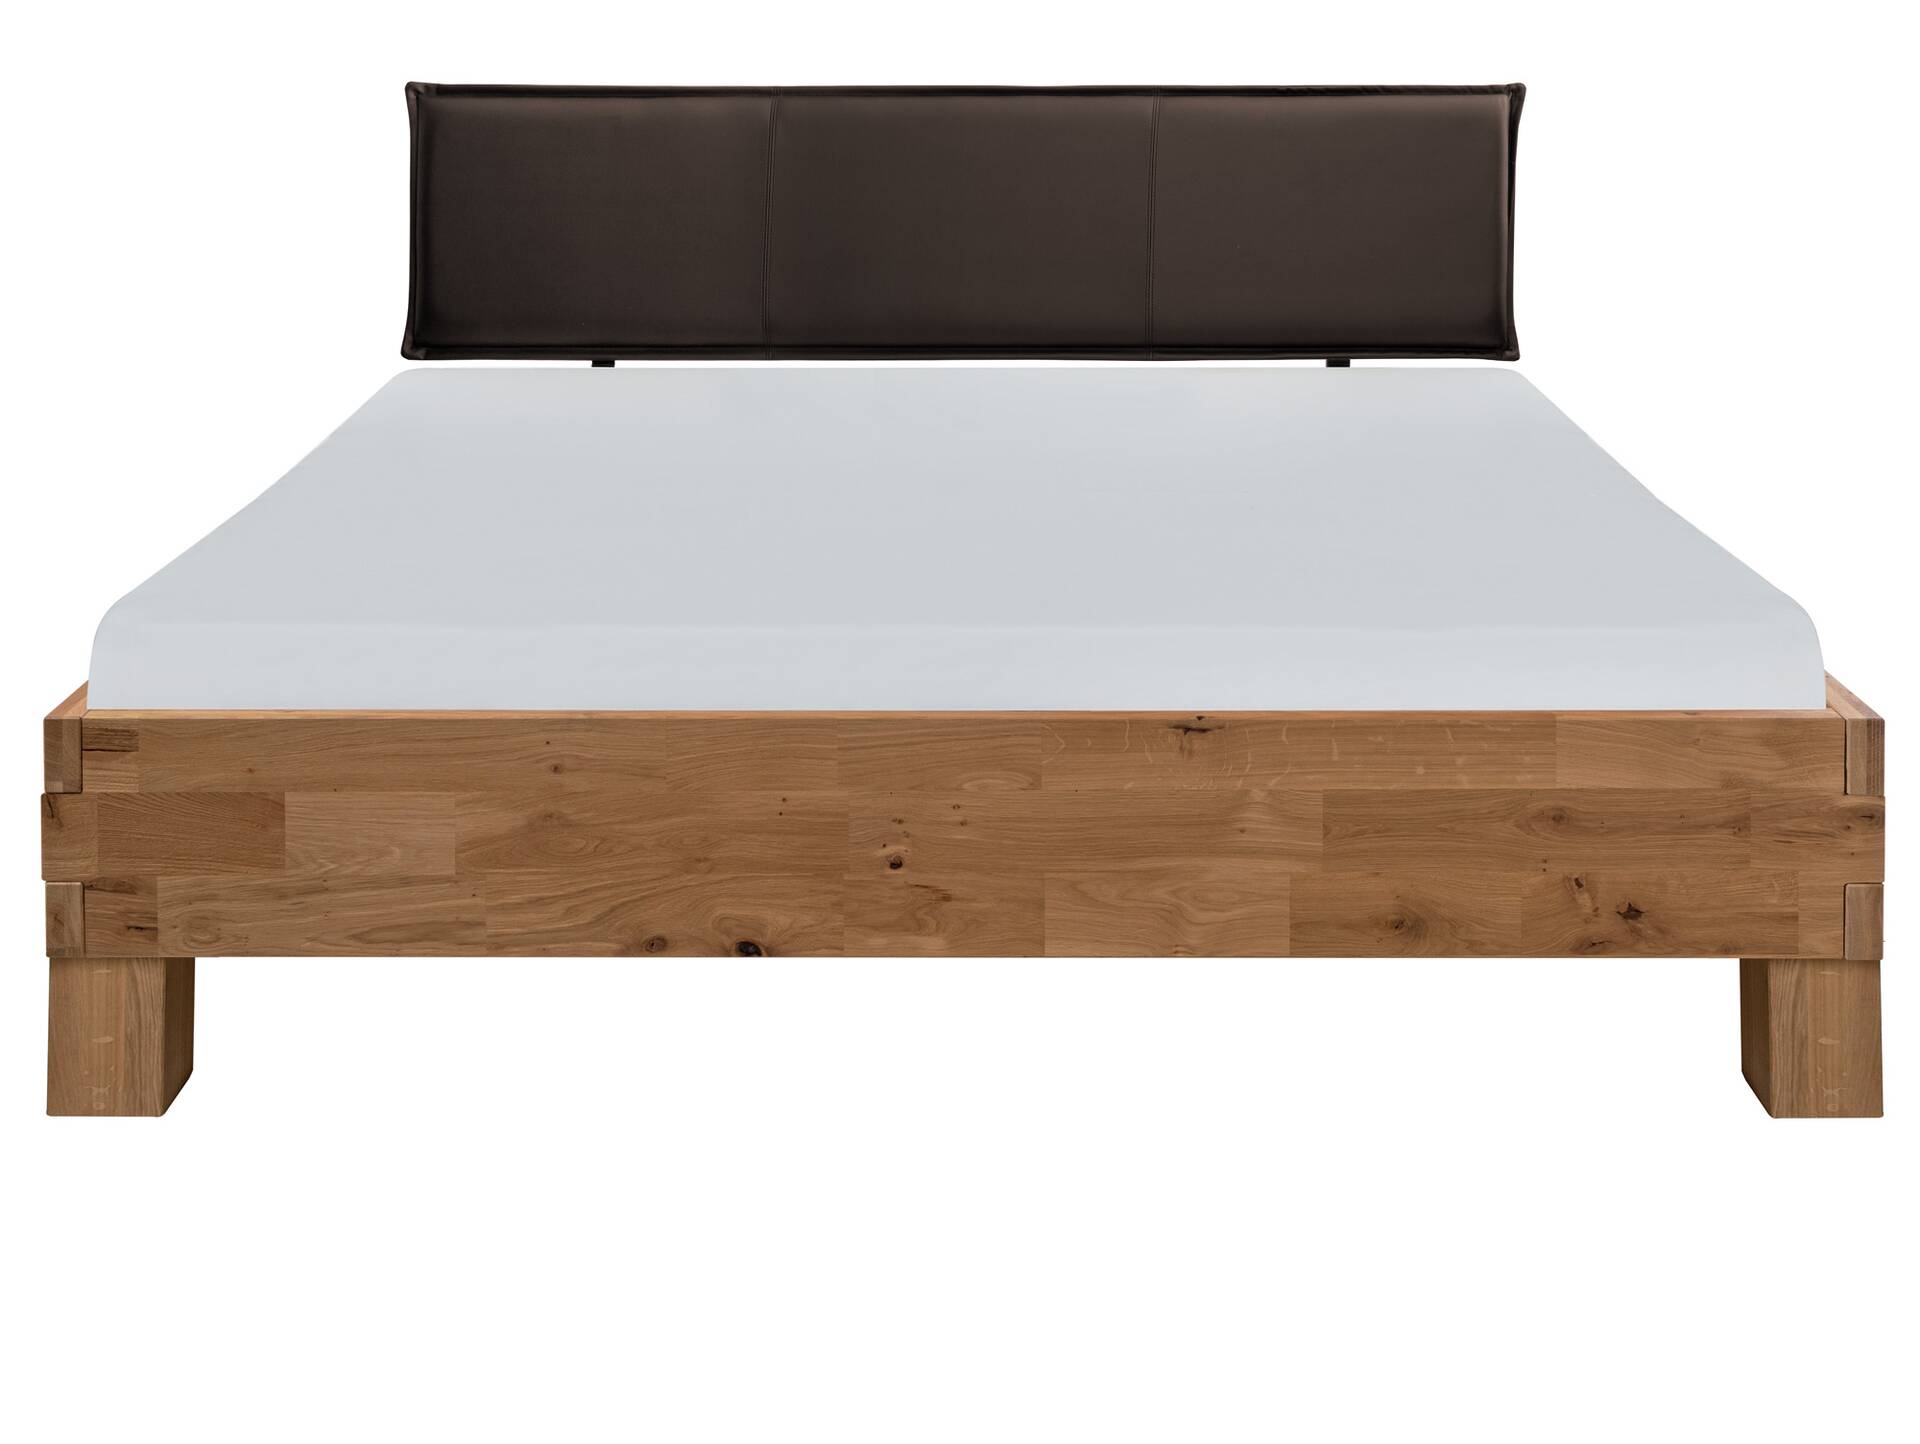 CORDINO 4-Fuß-Bett aus Eiche mit Polster-Kopfteil, Material Massivholz 140 x 200 cm | Eiche lackiert | Kunstleder Braun | gebürstet